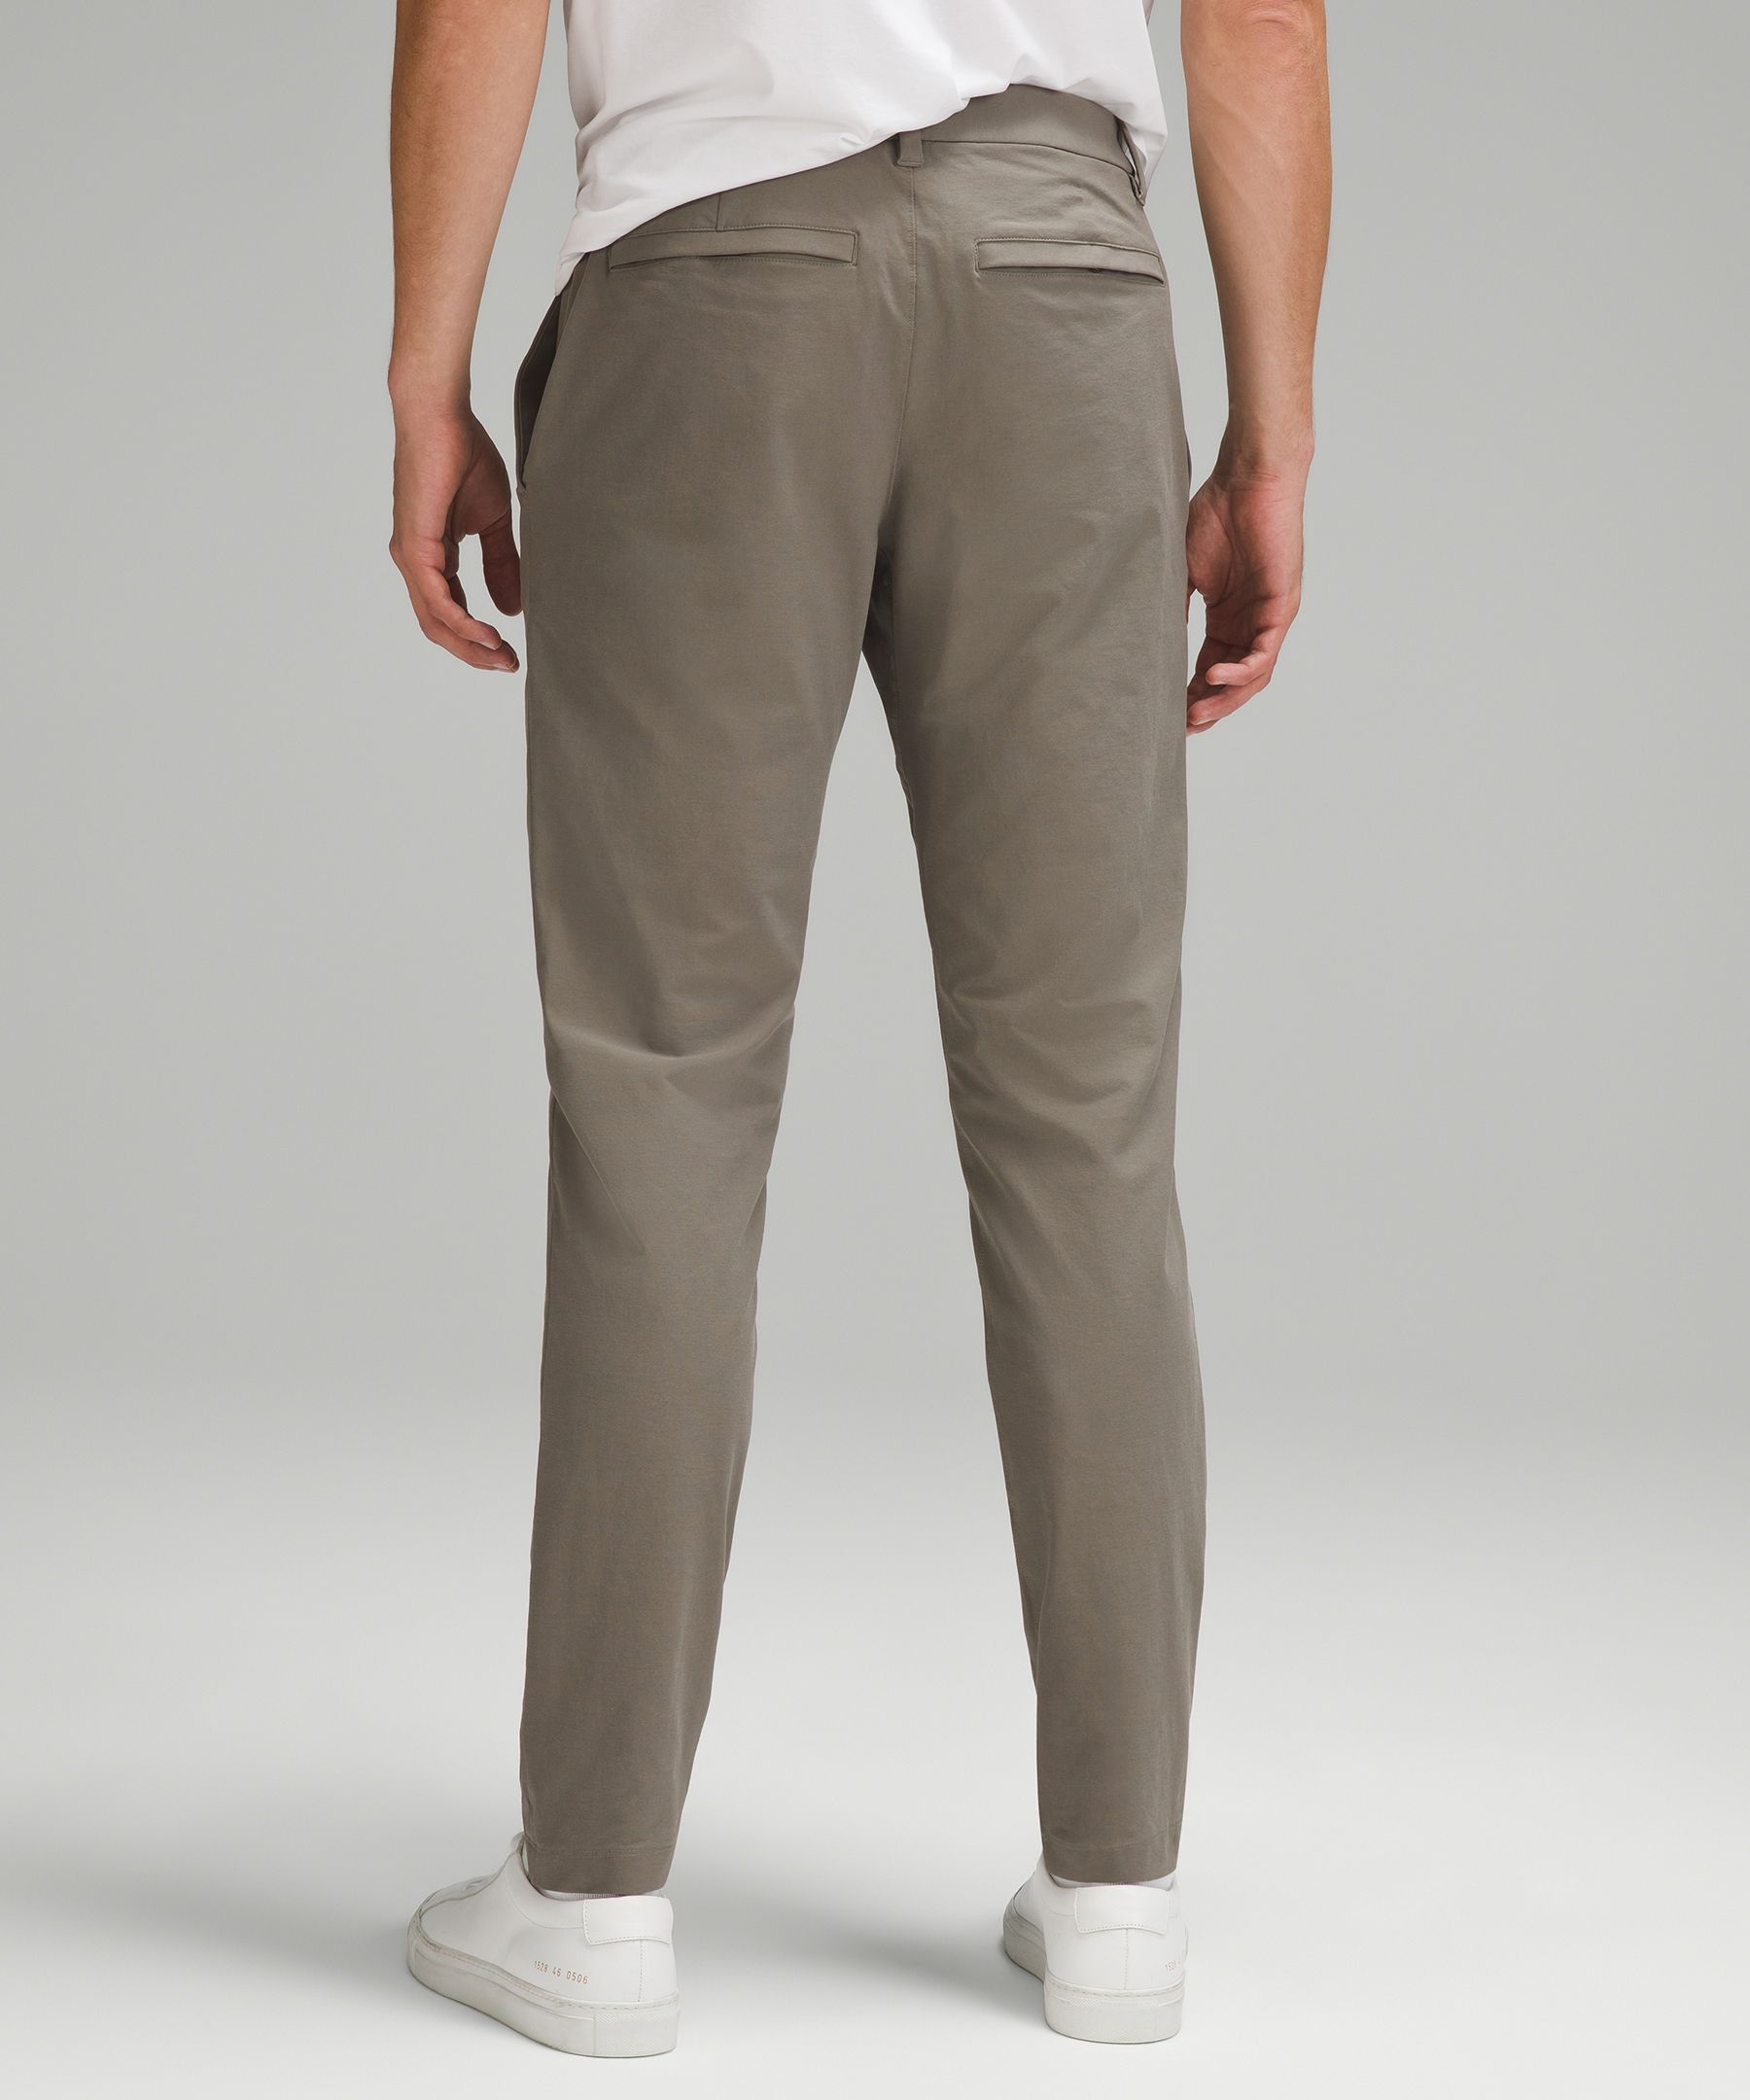 Shop Lululemon Abc Slim-fit Trousers 34"l Stretch Cotton Versatwill